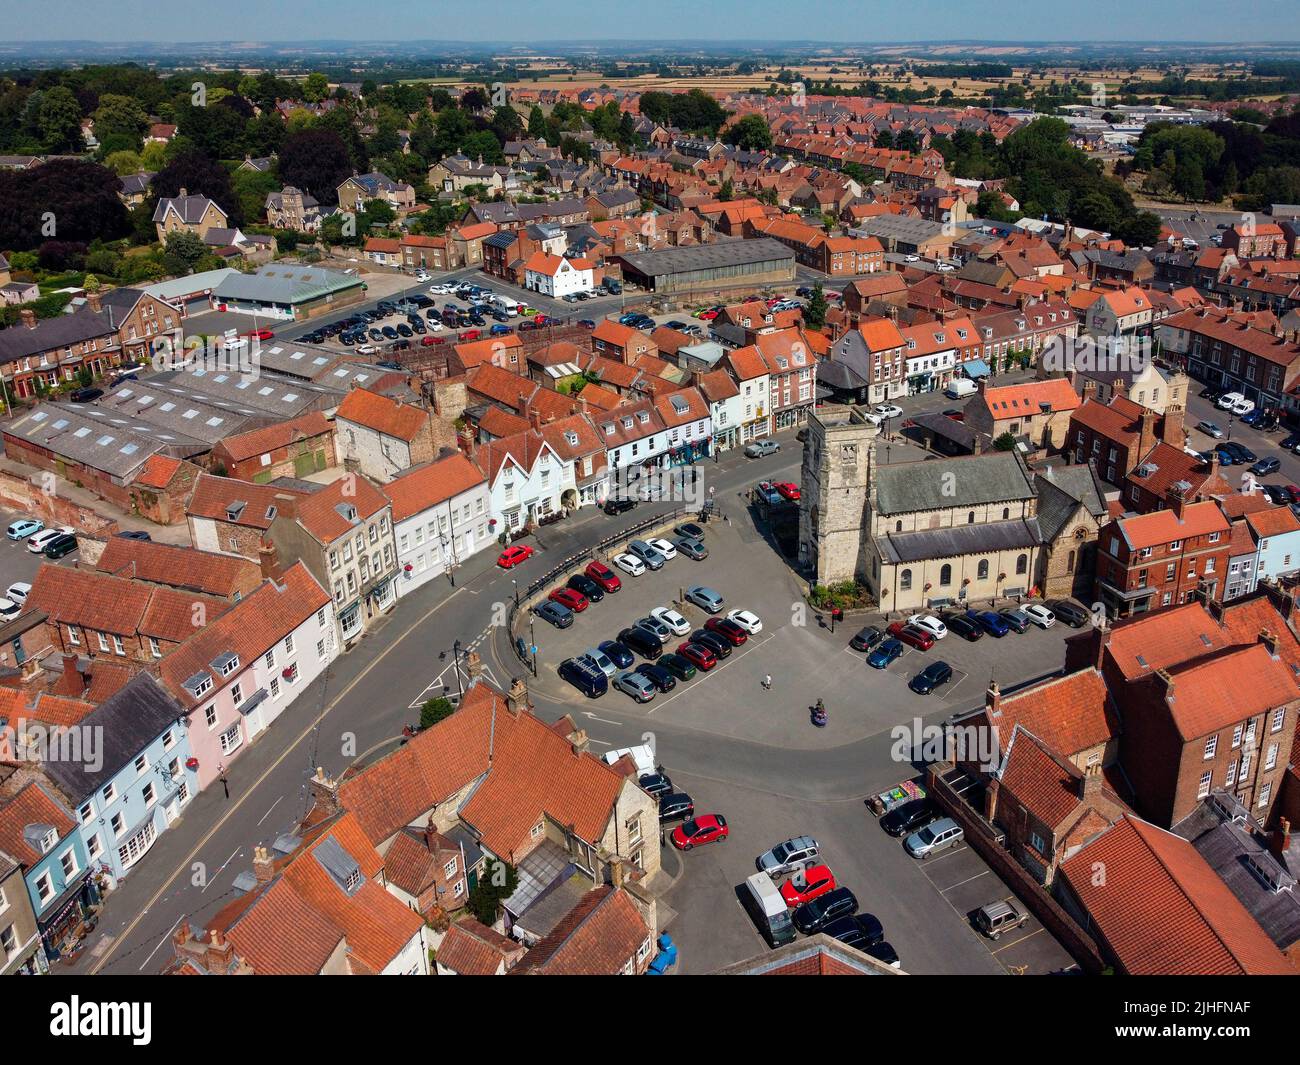 Vista aerea della piazza del mercato nella città di mercato di Malton nel North Yorkshire nel nord-est dell'Inghilterra. Foto Stock